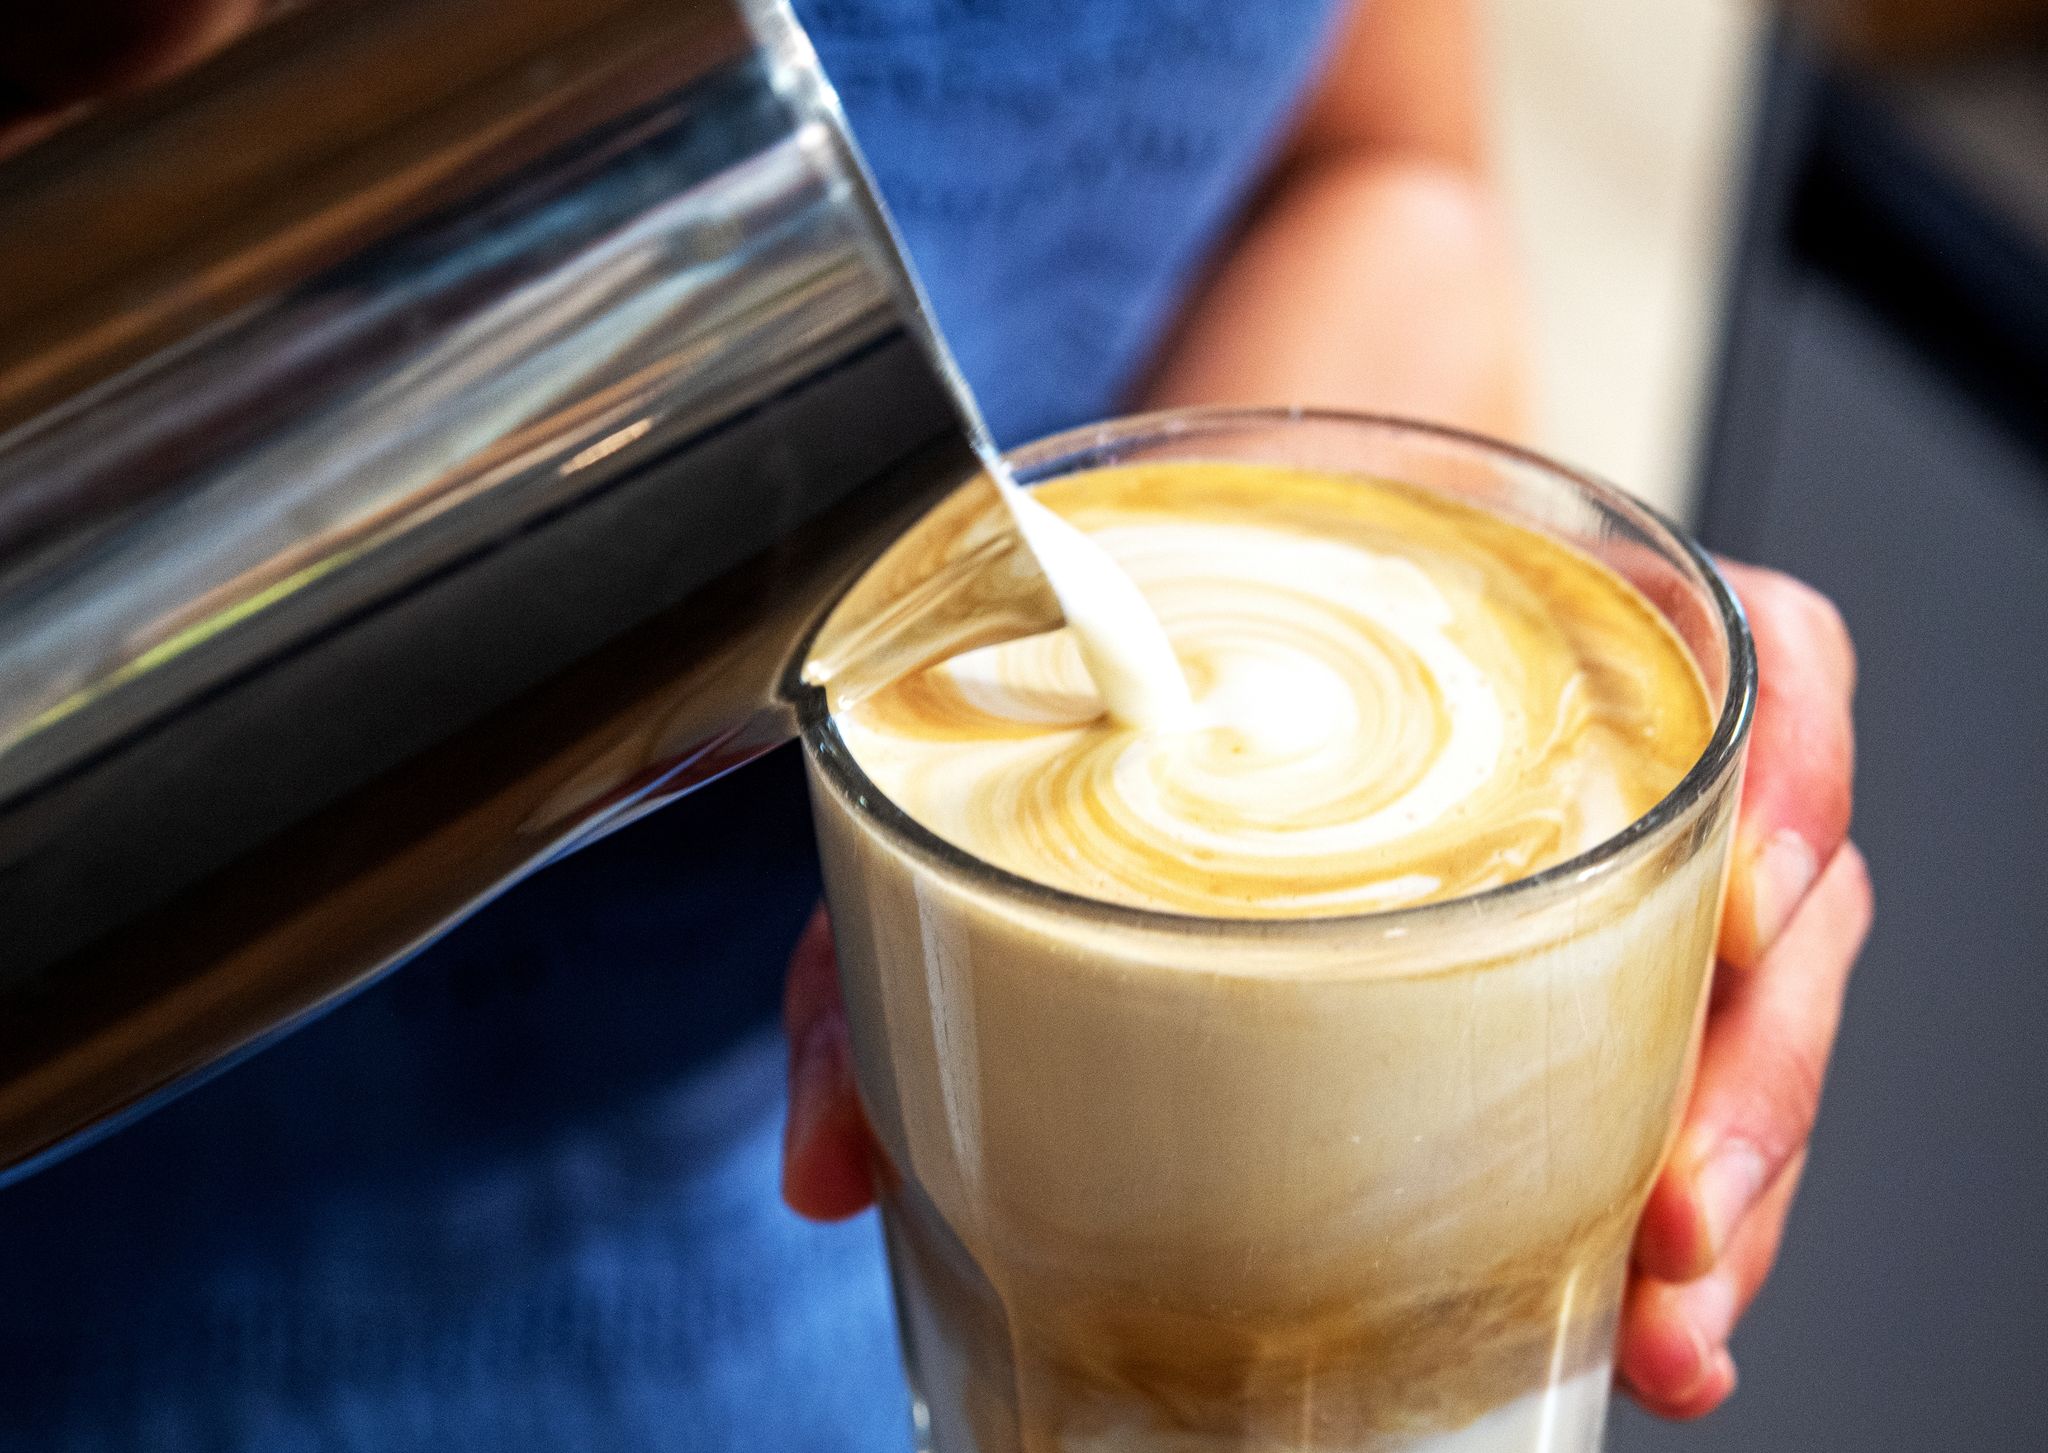 Je mehr Fettgehalt die Milch hat desto cremiger schmeckt die Kaffeespezialität.